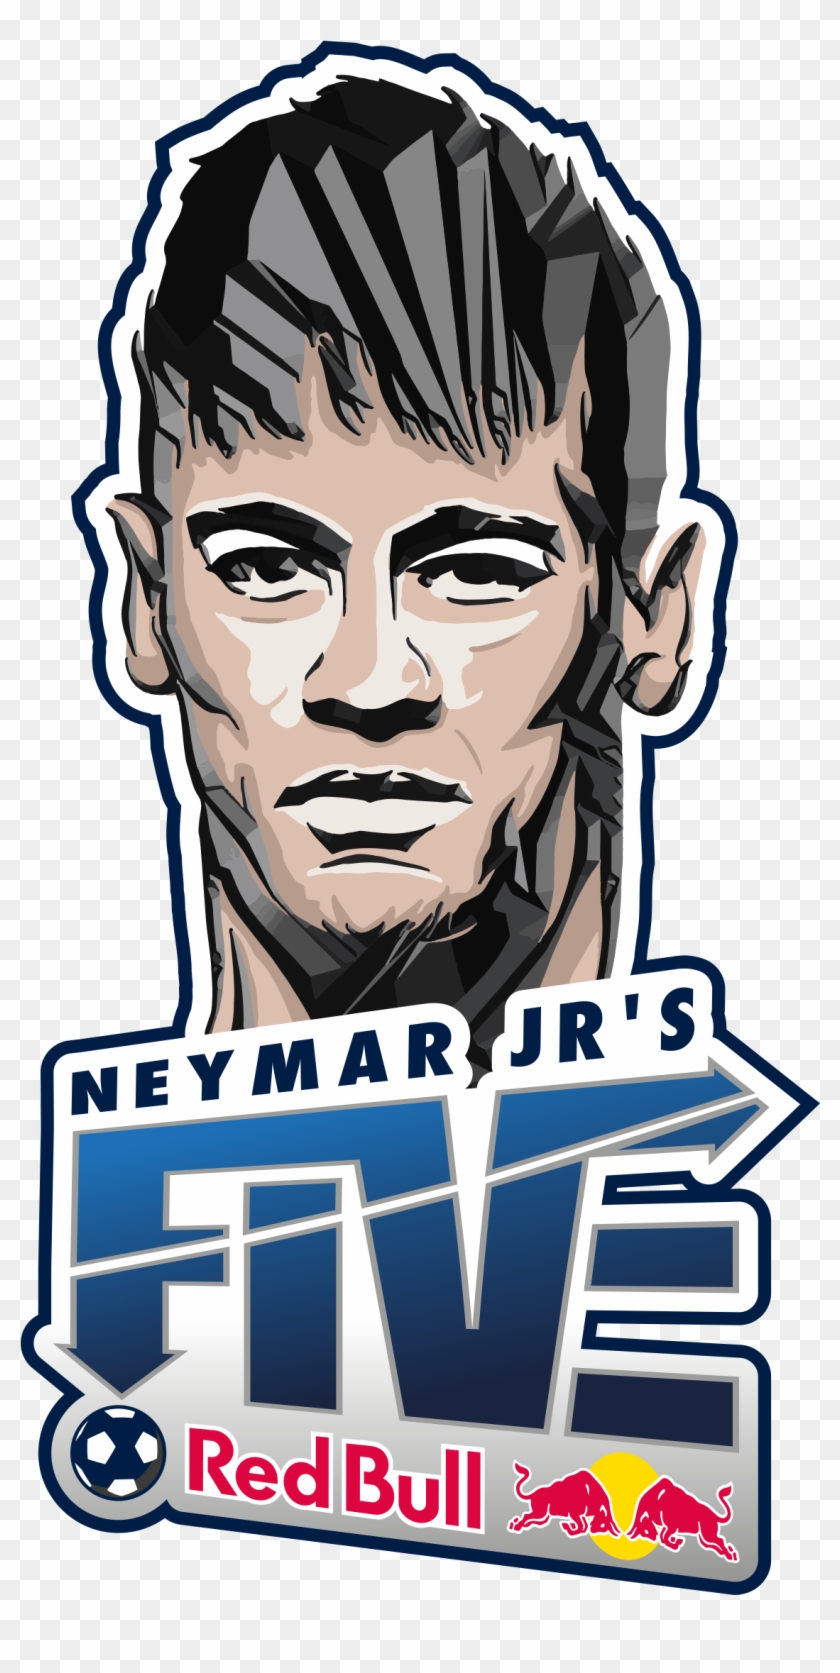 Unnamed - Red Bull Neymar Jr 5 #519000